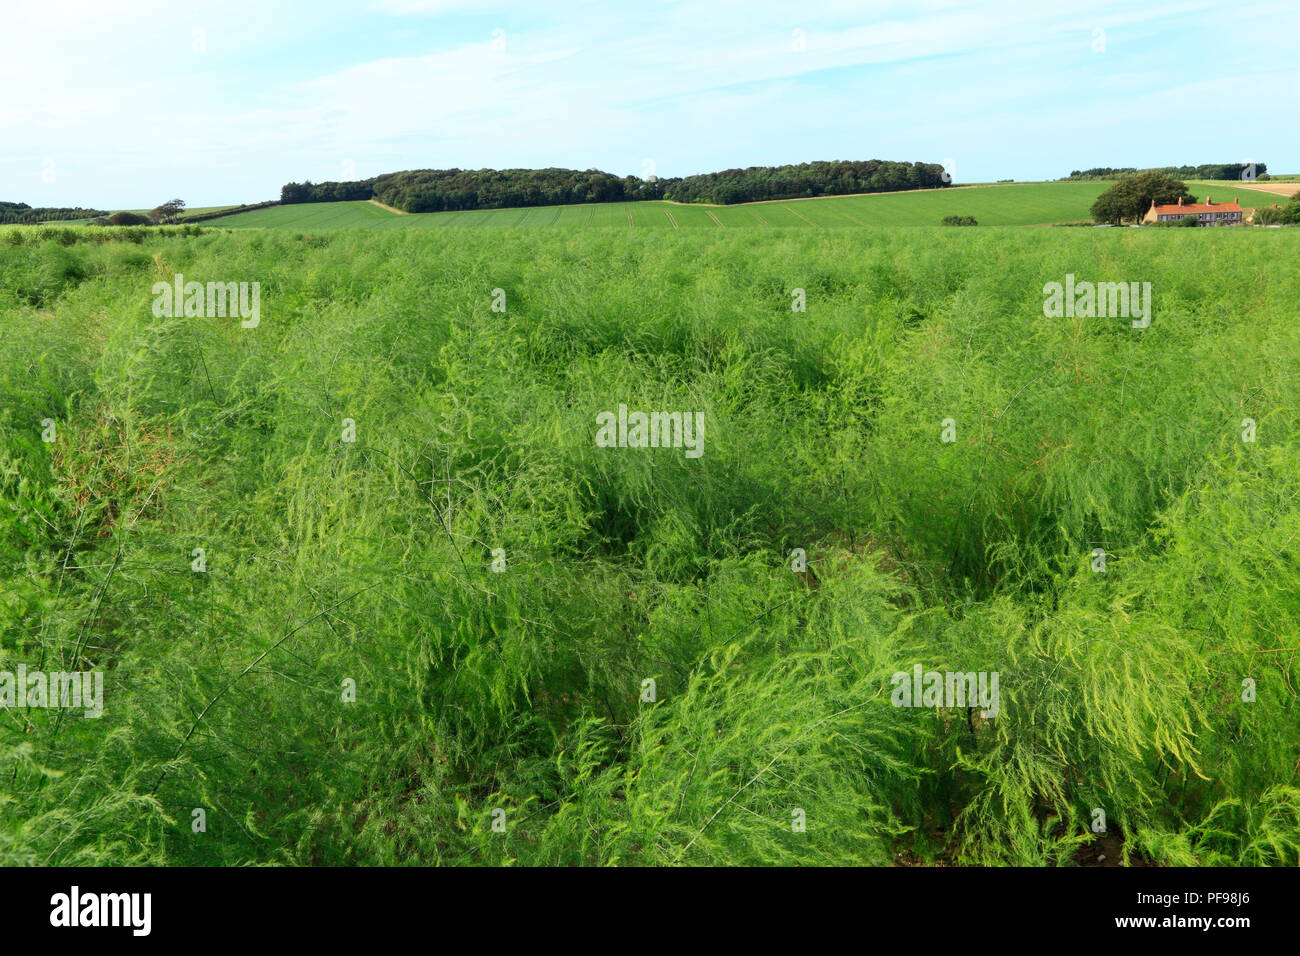 Spargel, Ernte, Ernte, Flächeninhalt, grüne Landschaft, Thornham, North Norfolk, Landschaft, Landwirtschaft, Agricultura Stockfoto